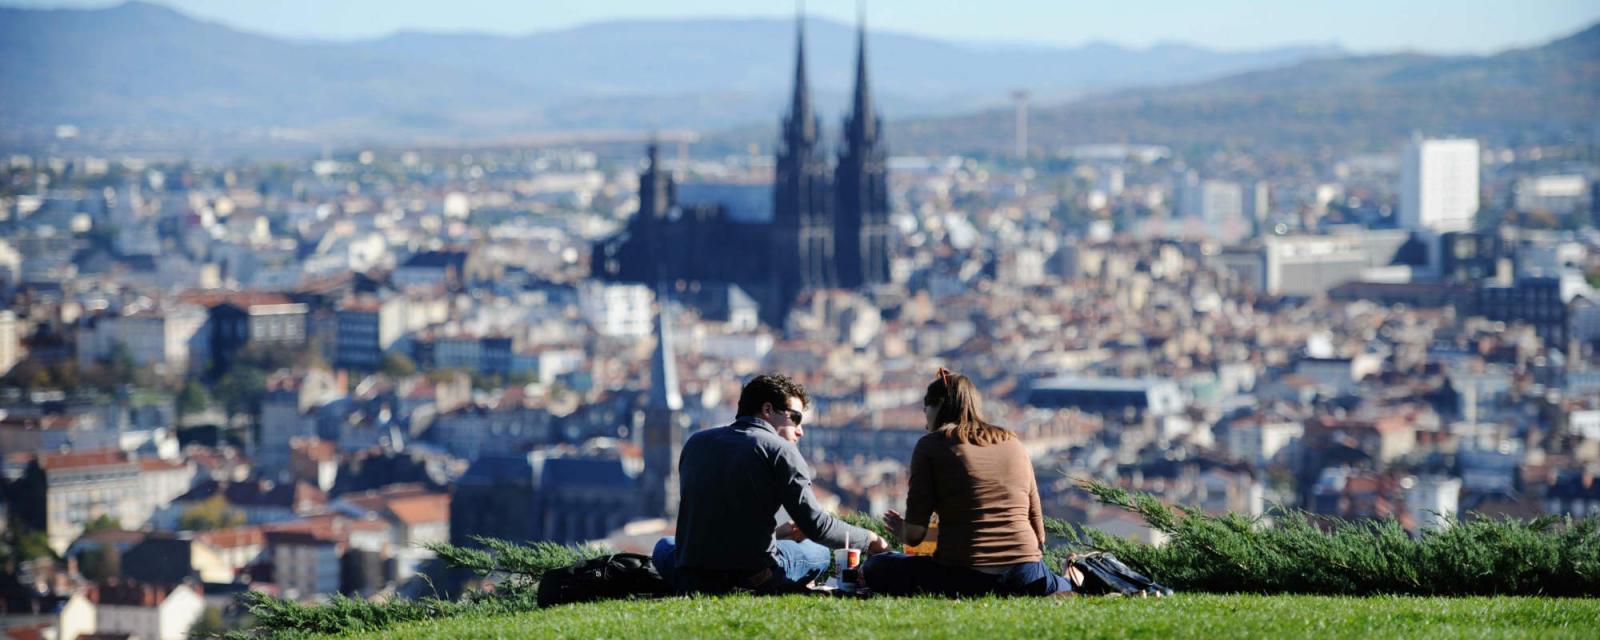 5 redenen om naar Clermont-Ferrand te gaan | CityZapper 